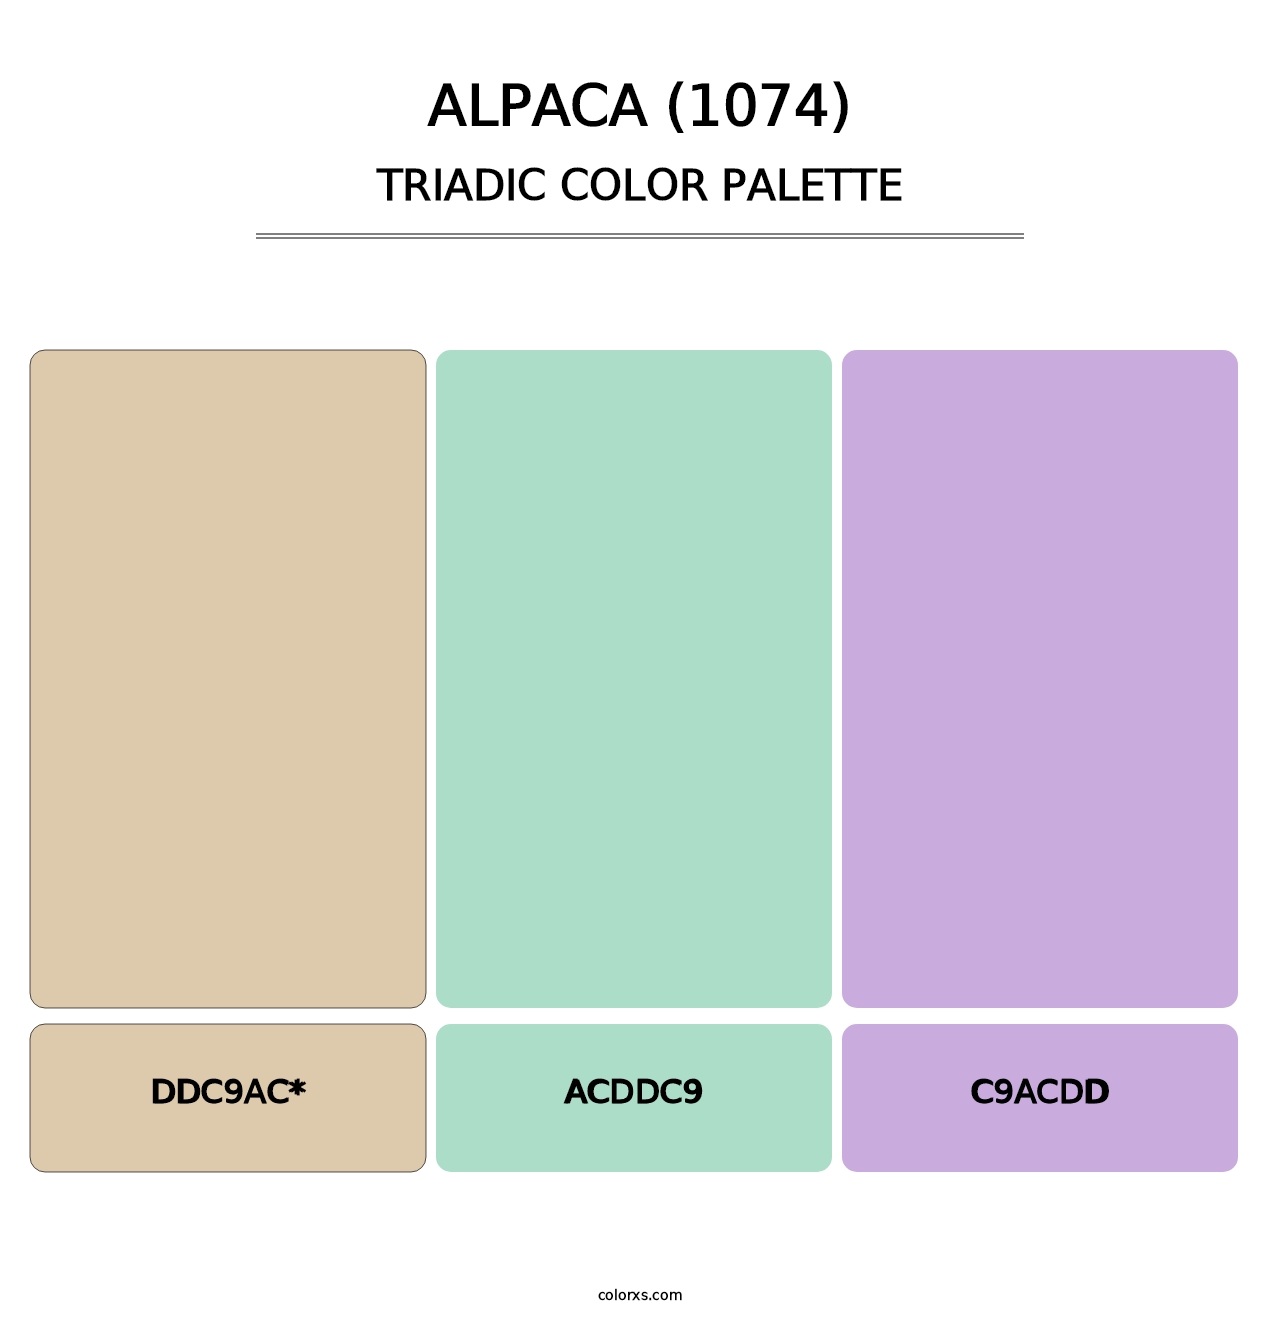 Alpaca (1074) - Triadic Color Palette